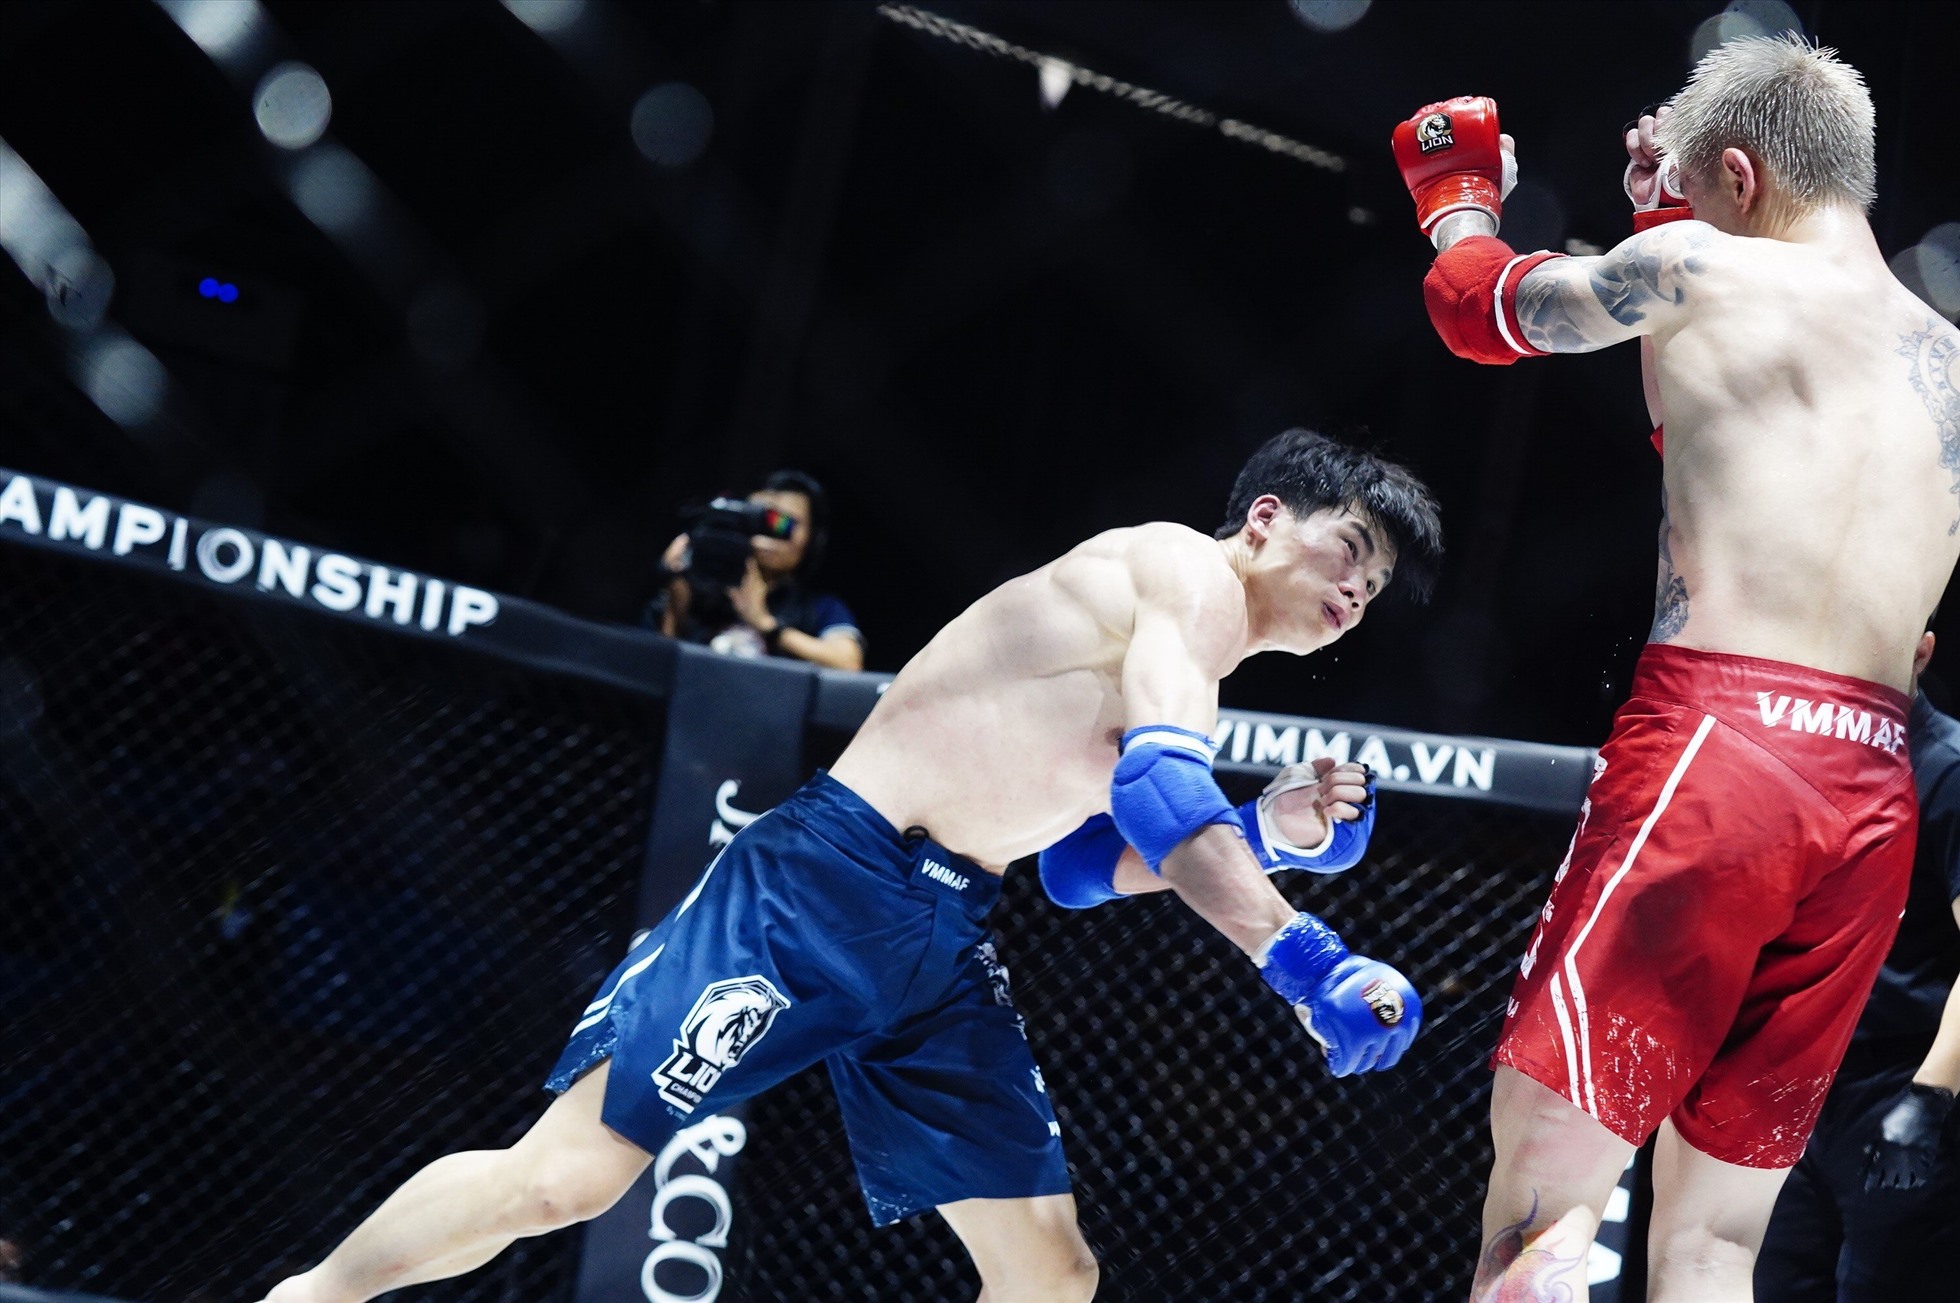 Hạng cân 65kg nam, võ sĩ Quàng Văn Minh (xanh) thắng Trần Việt Hoàng (đỏ) bằng tính điểm lần lượt ở các hiệp là 29-28, 29-28, 29-28.